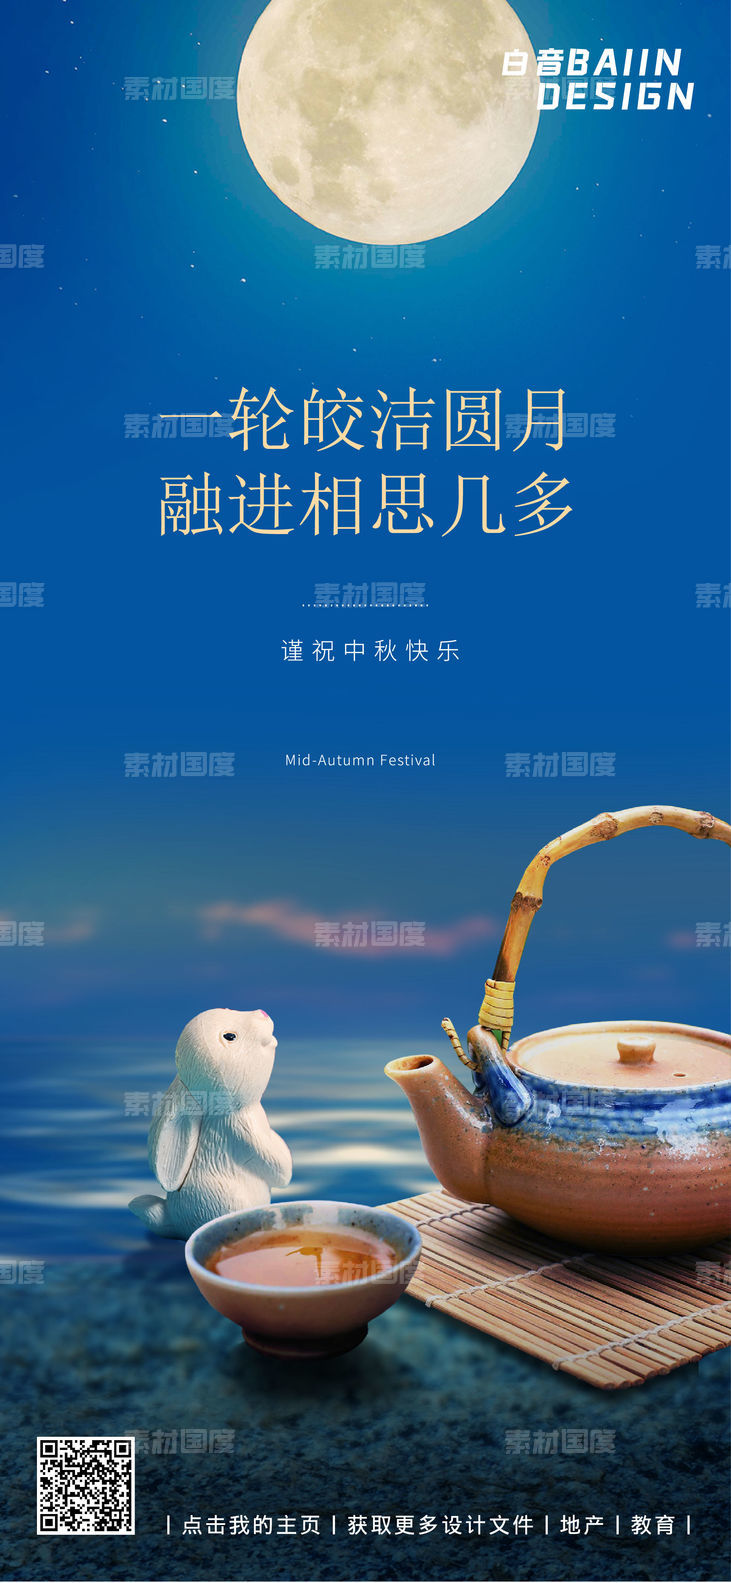 中秋节祝福摄影图宣传